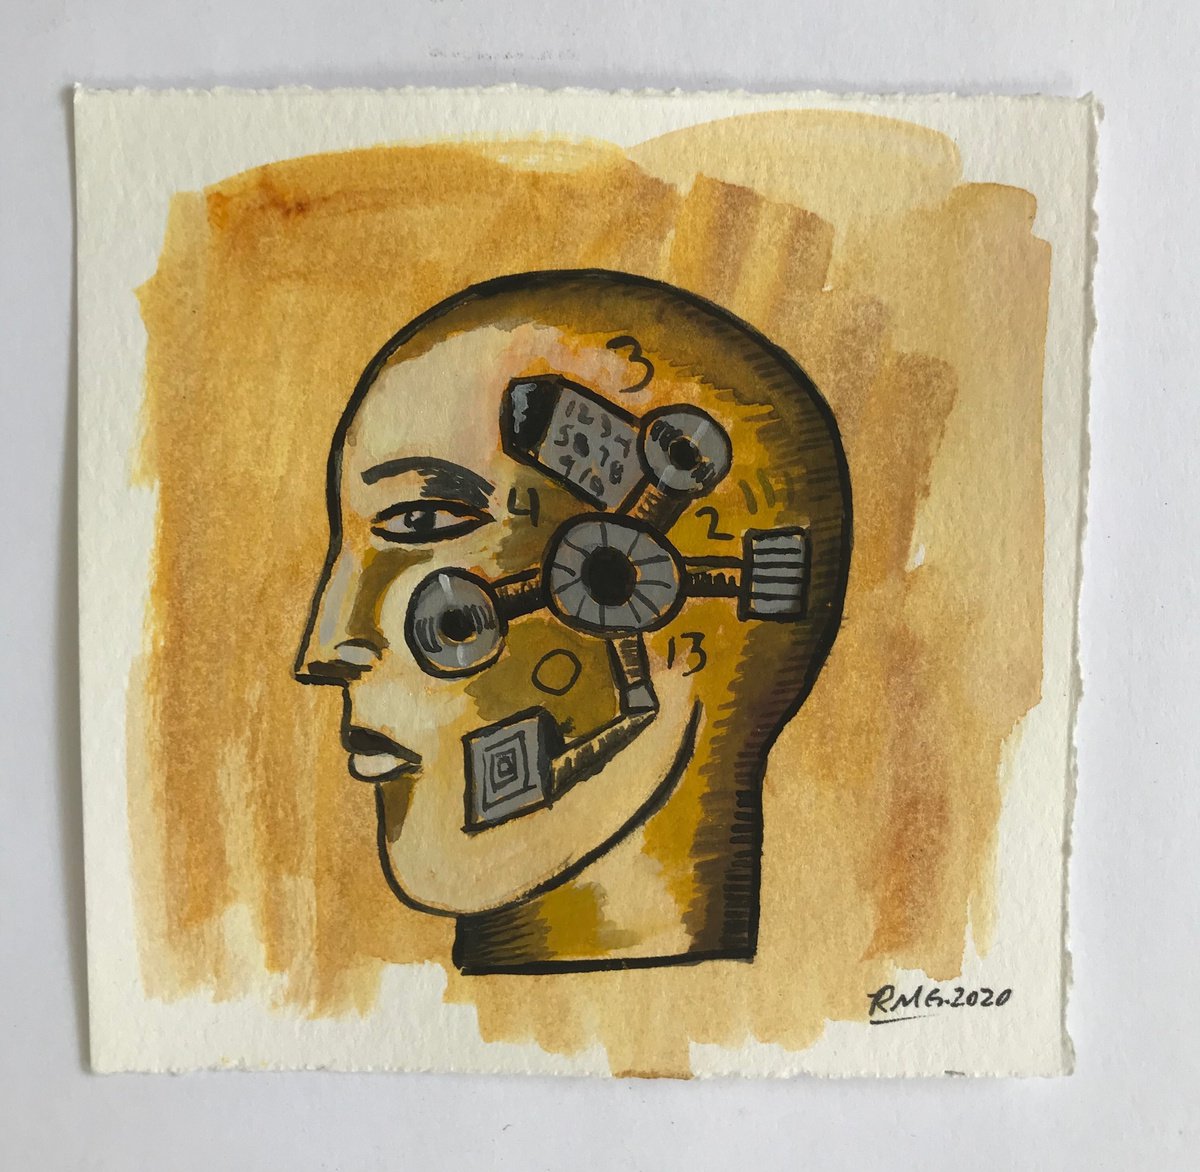 Cyborg Man’ by Roberto Munguia Garcia